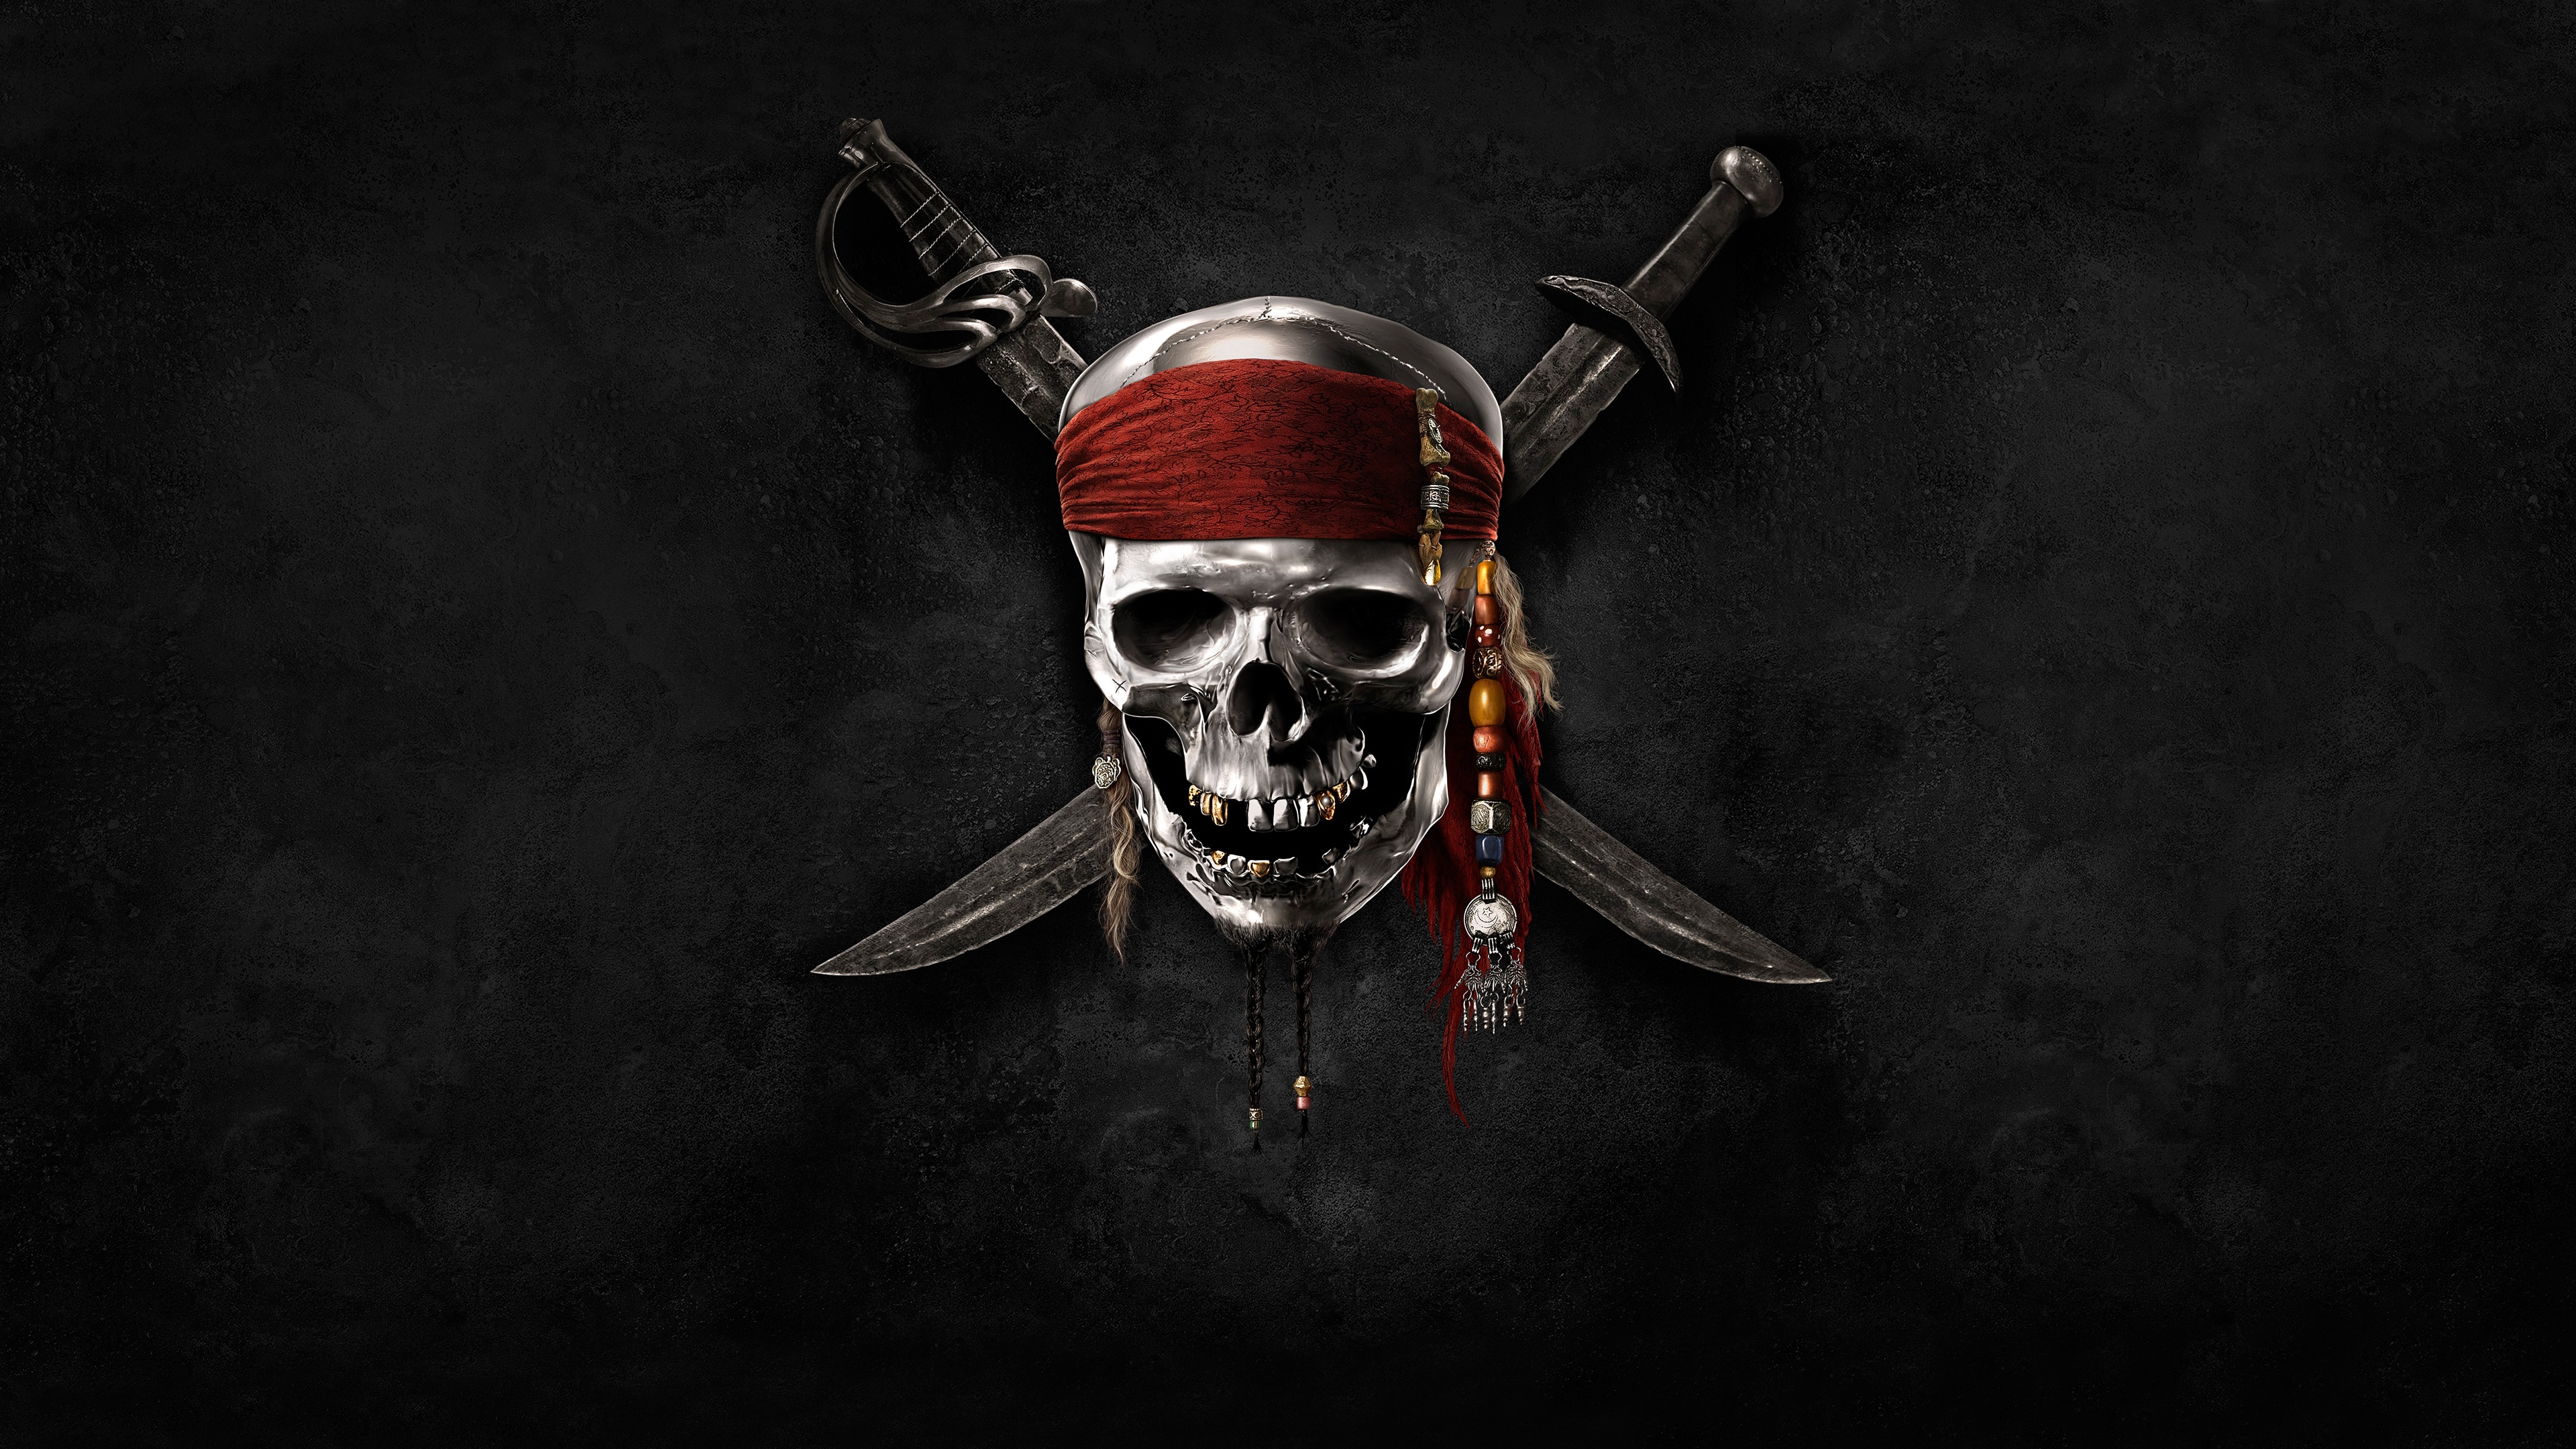 pirate 3840 x 2160 52